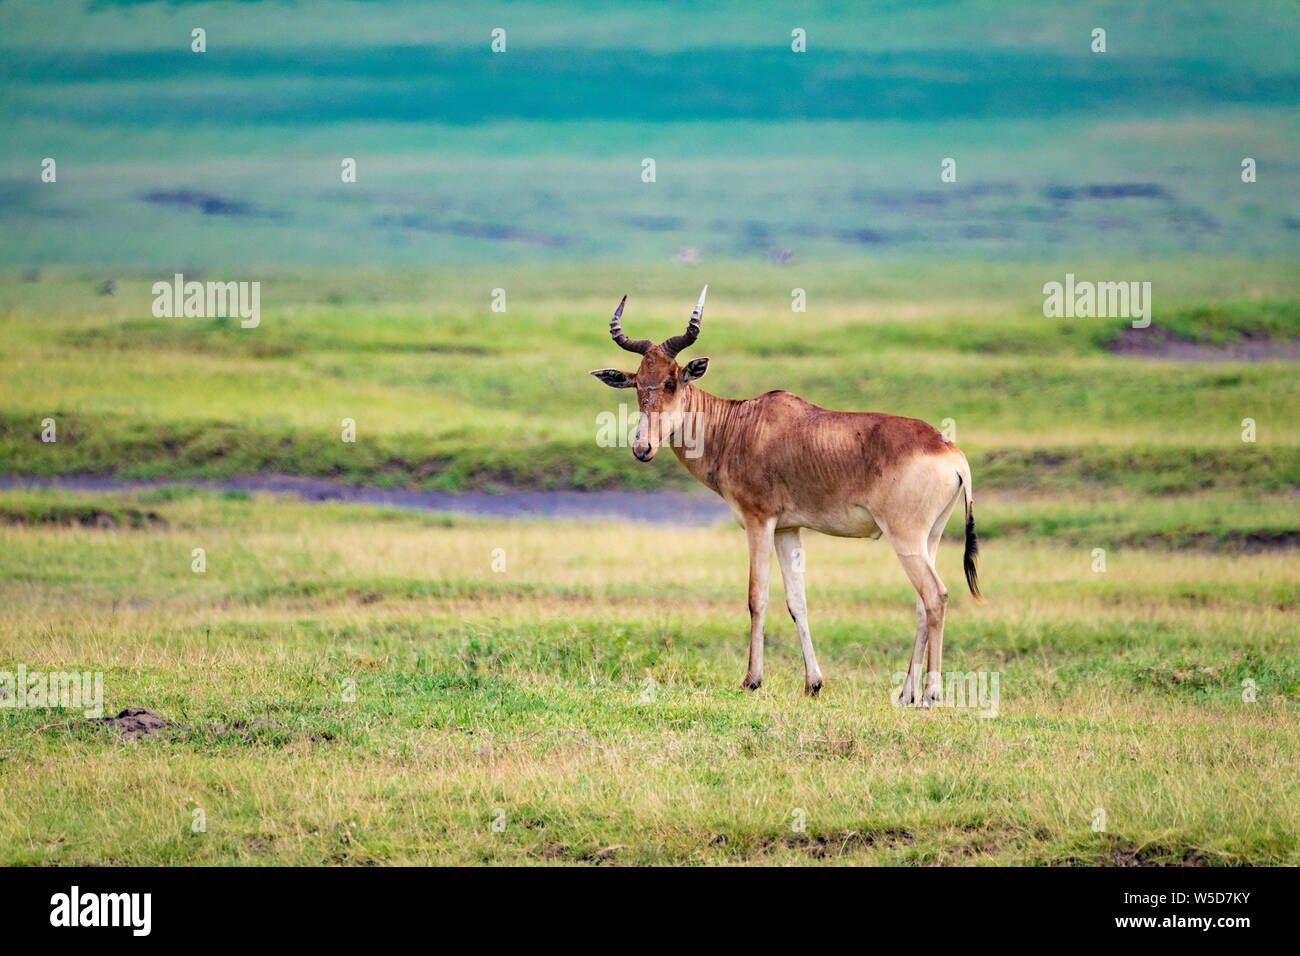 Il coke Hartebeest (Alcelaphus buselaphus cokii) Questo antelope sorge 1.5 metri alto in corrispondenza della sua spalla e può pesare fino a 200 kg, vivono in aperta in avanti Foto Stock